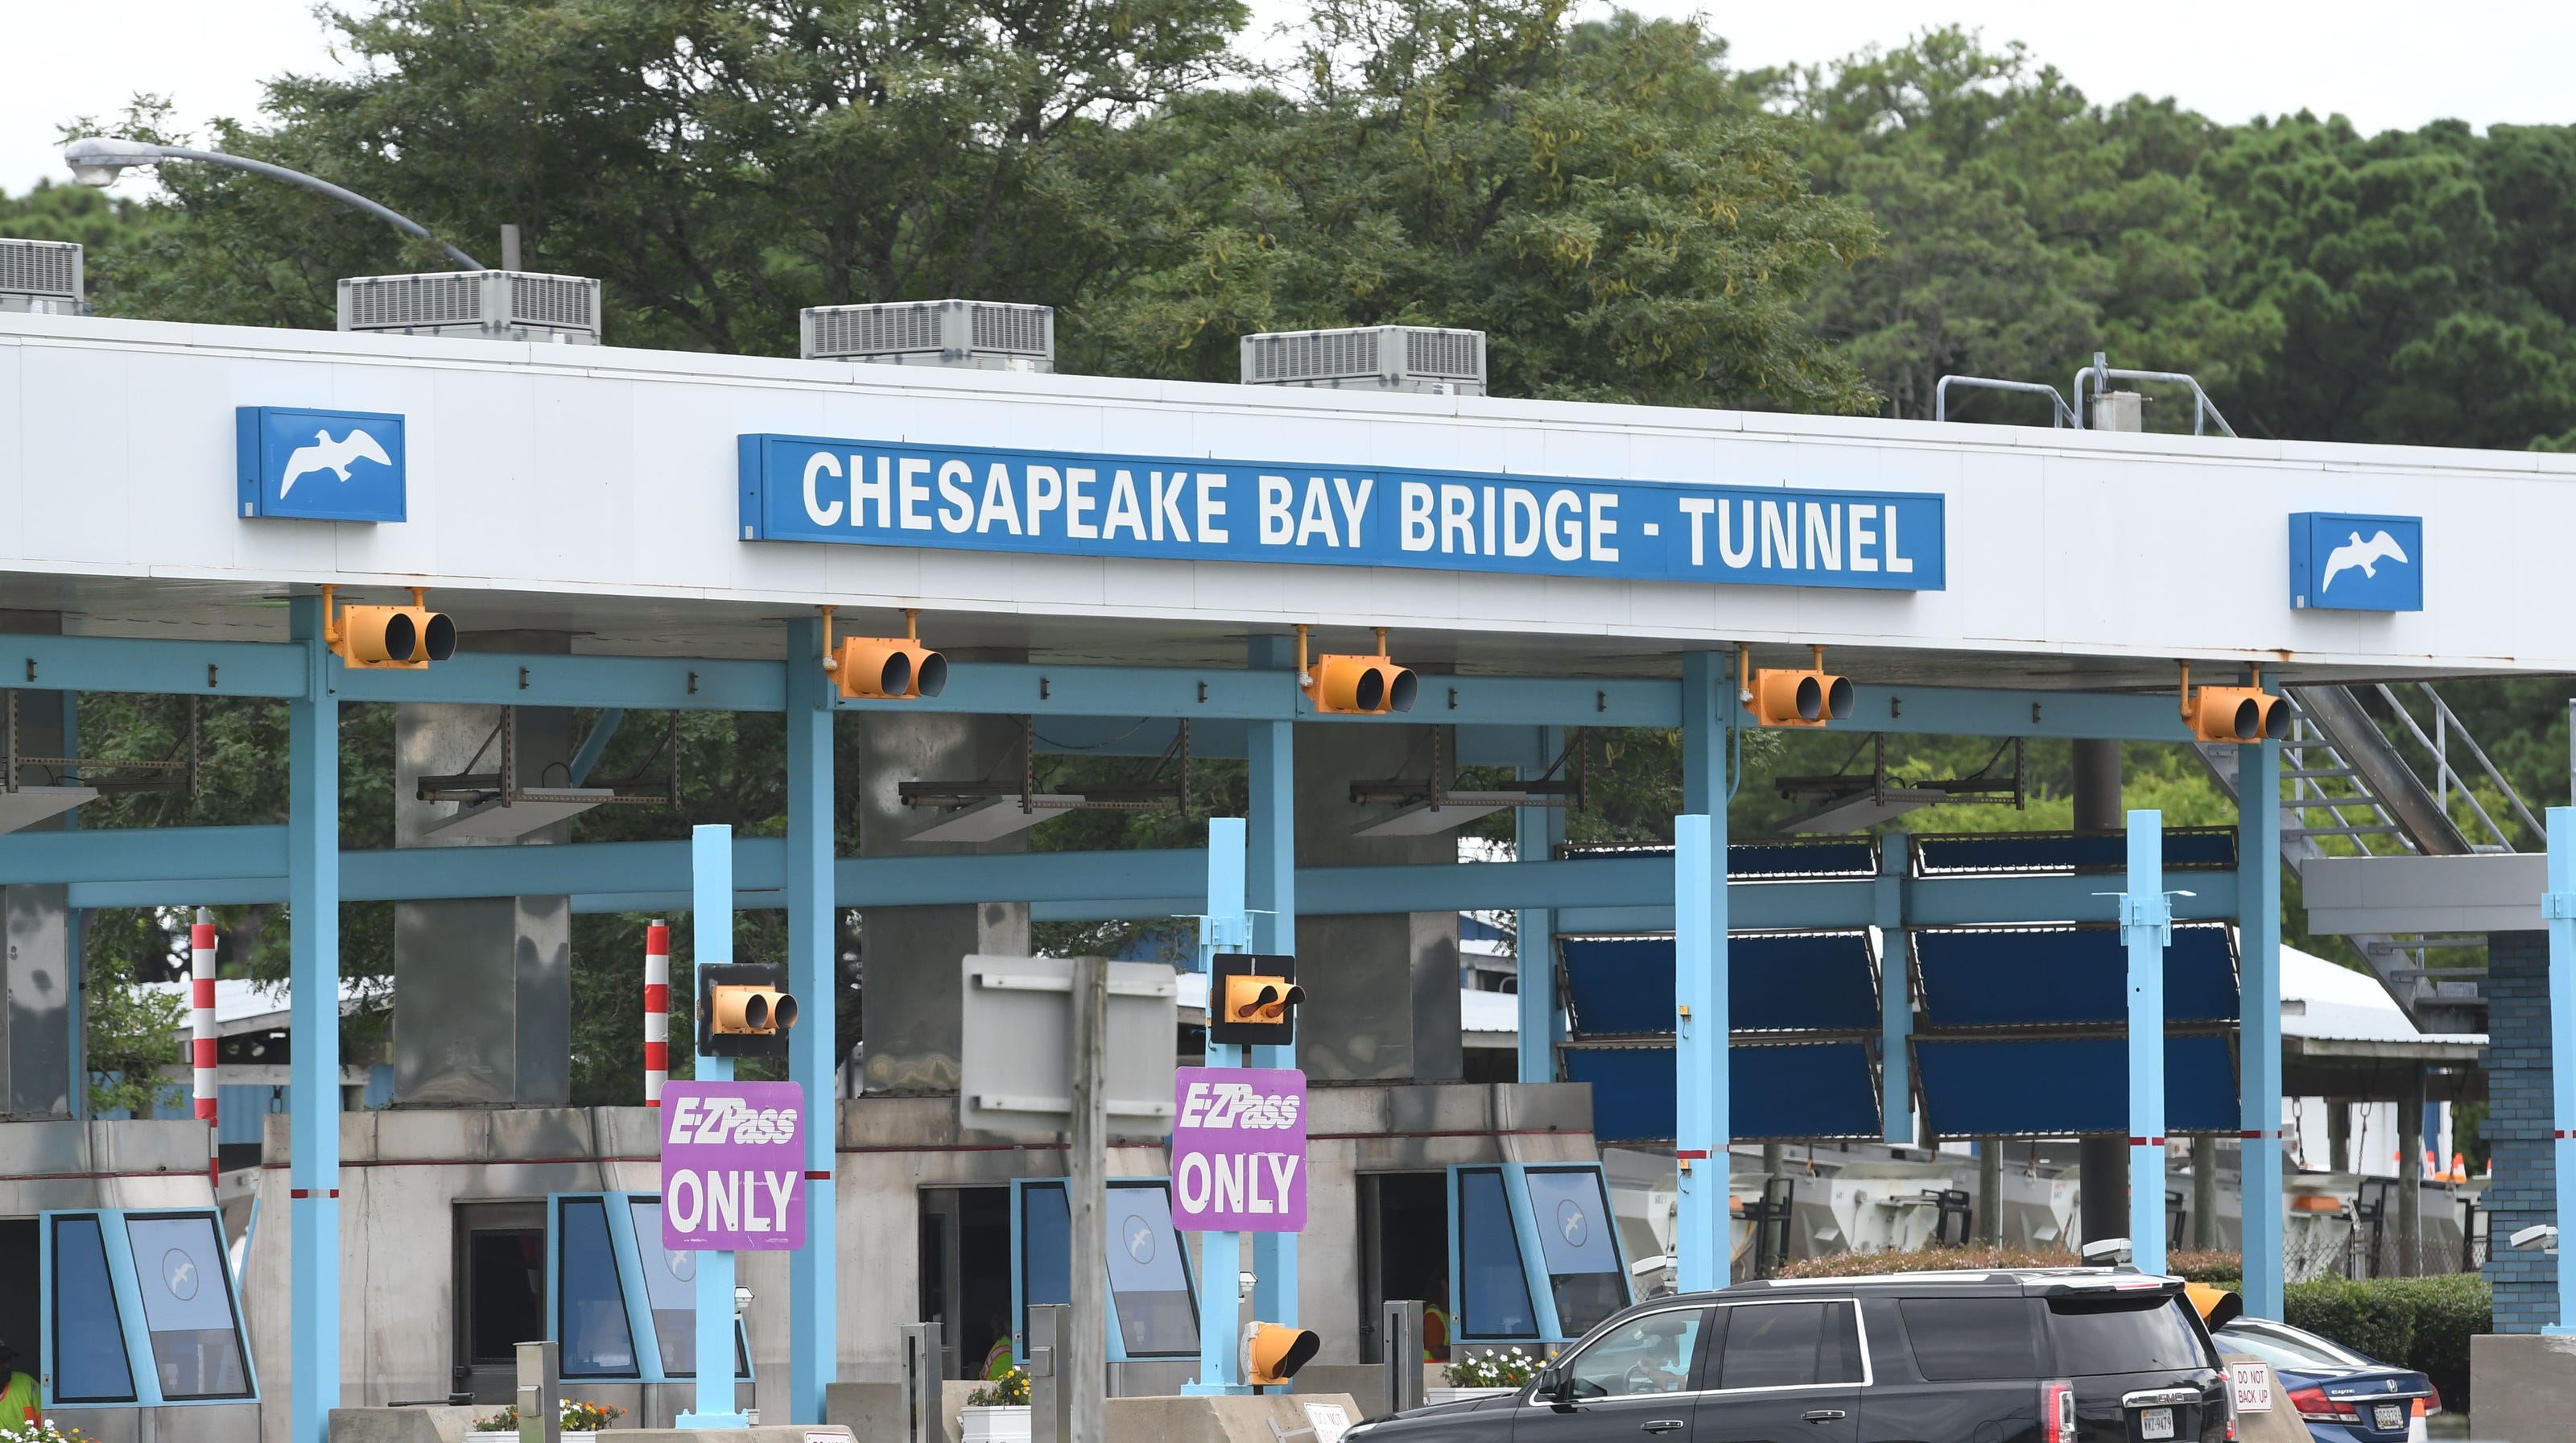 Chesapeake Bay BridgeTunnel new tolls in effect